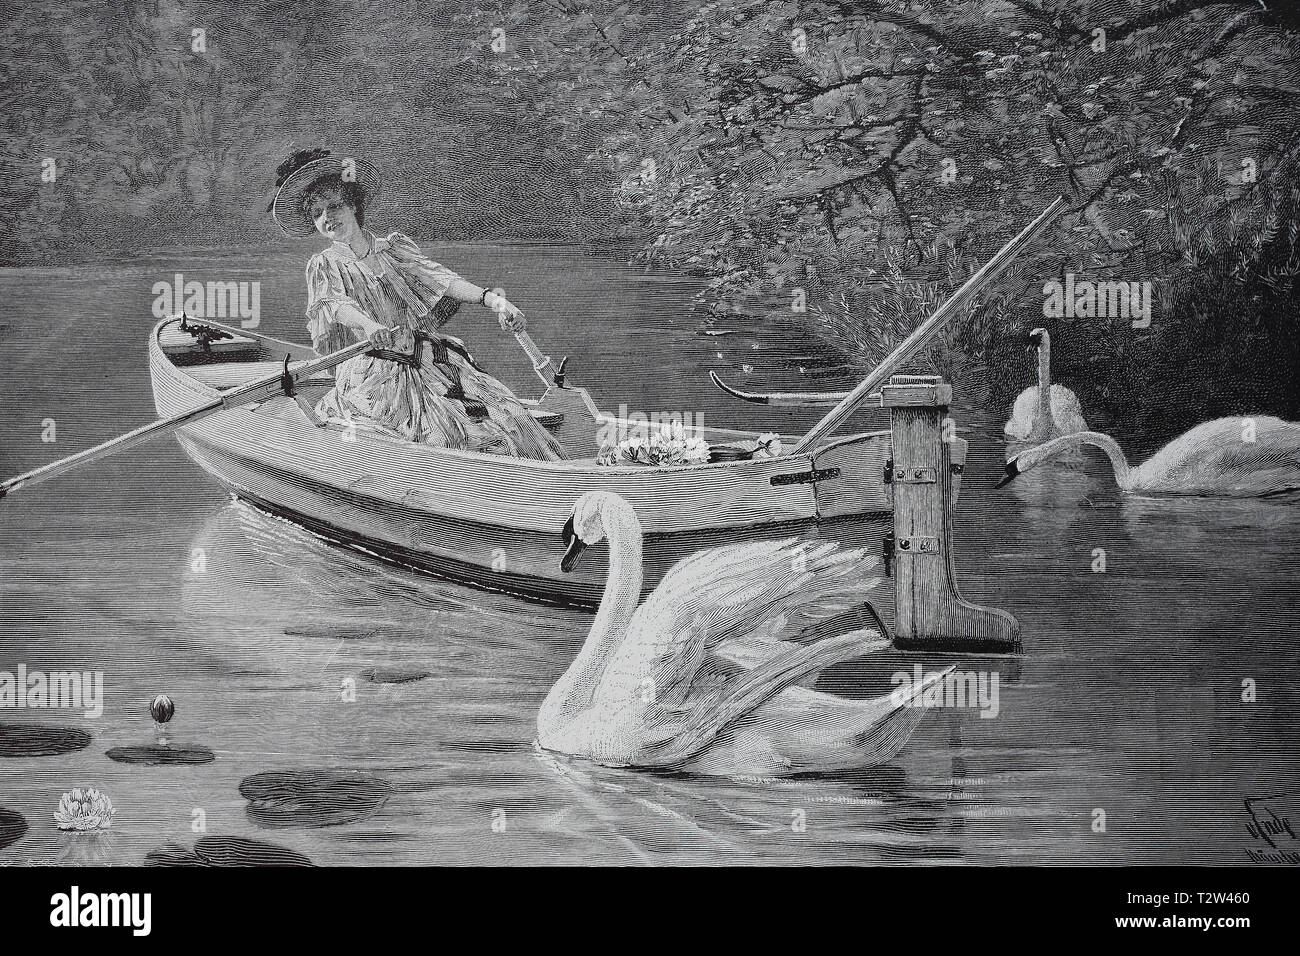 A swan pursues an elegant lady in an oar boat sits and has picked water lilies, Ein Schwan verfolgt eine elegante Dame die in einem Ruderboot sitzt und Seerosen gepflückt hat Stock Photo